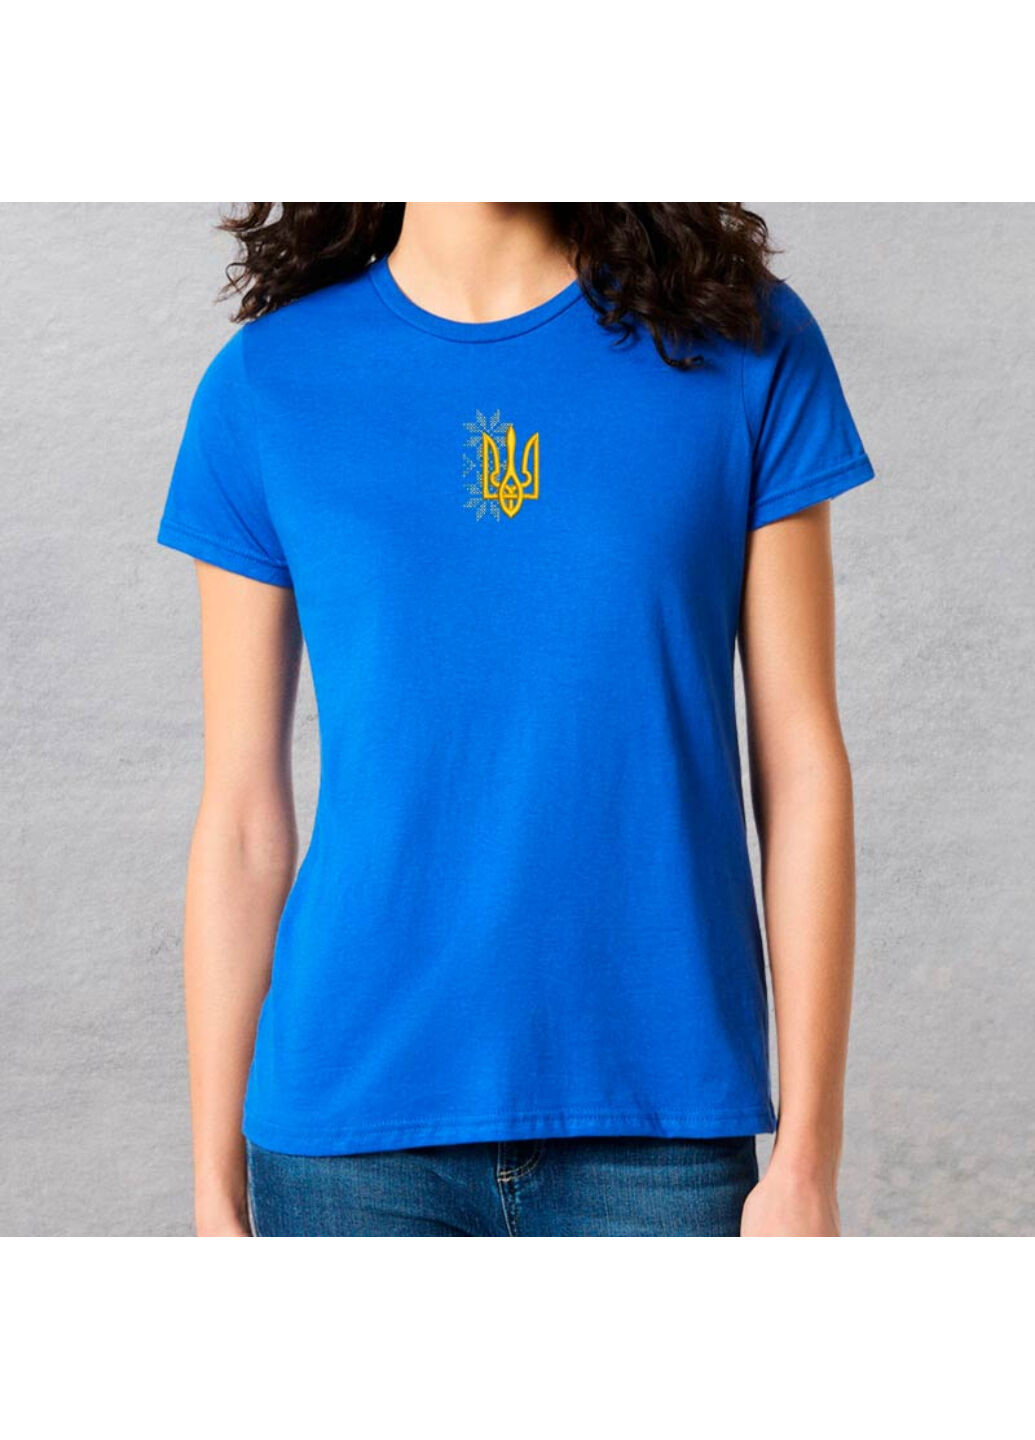 Синя футболка з вишивкою тризуба 02-3 жіноча синій l No Brand